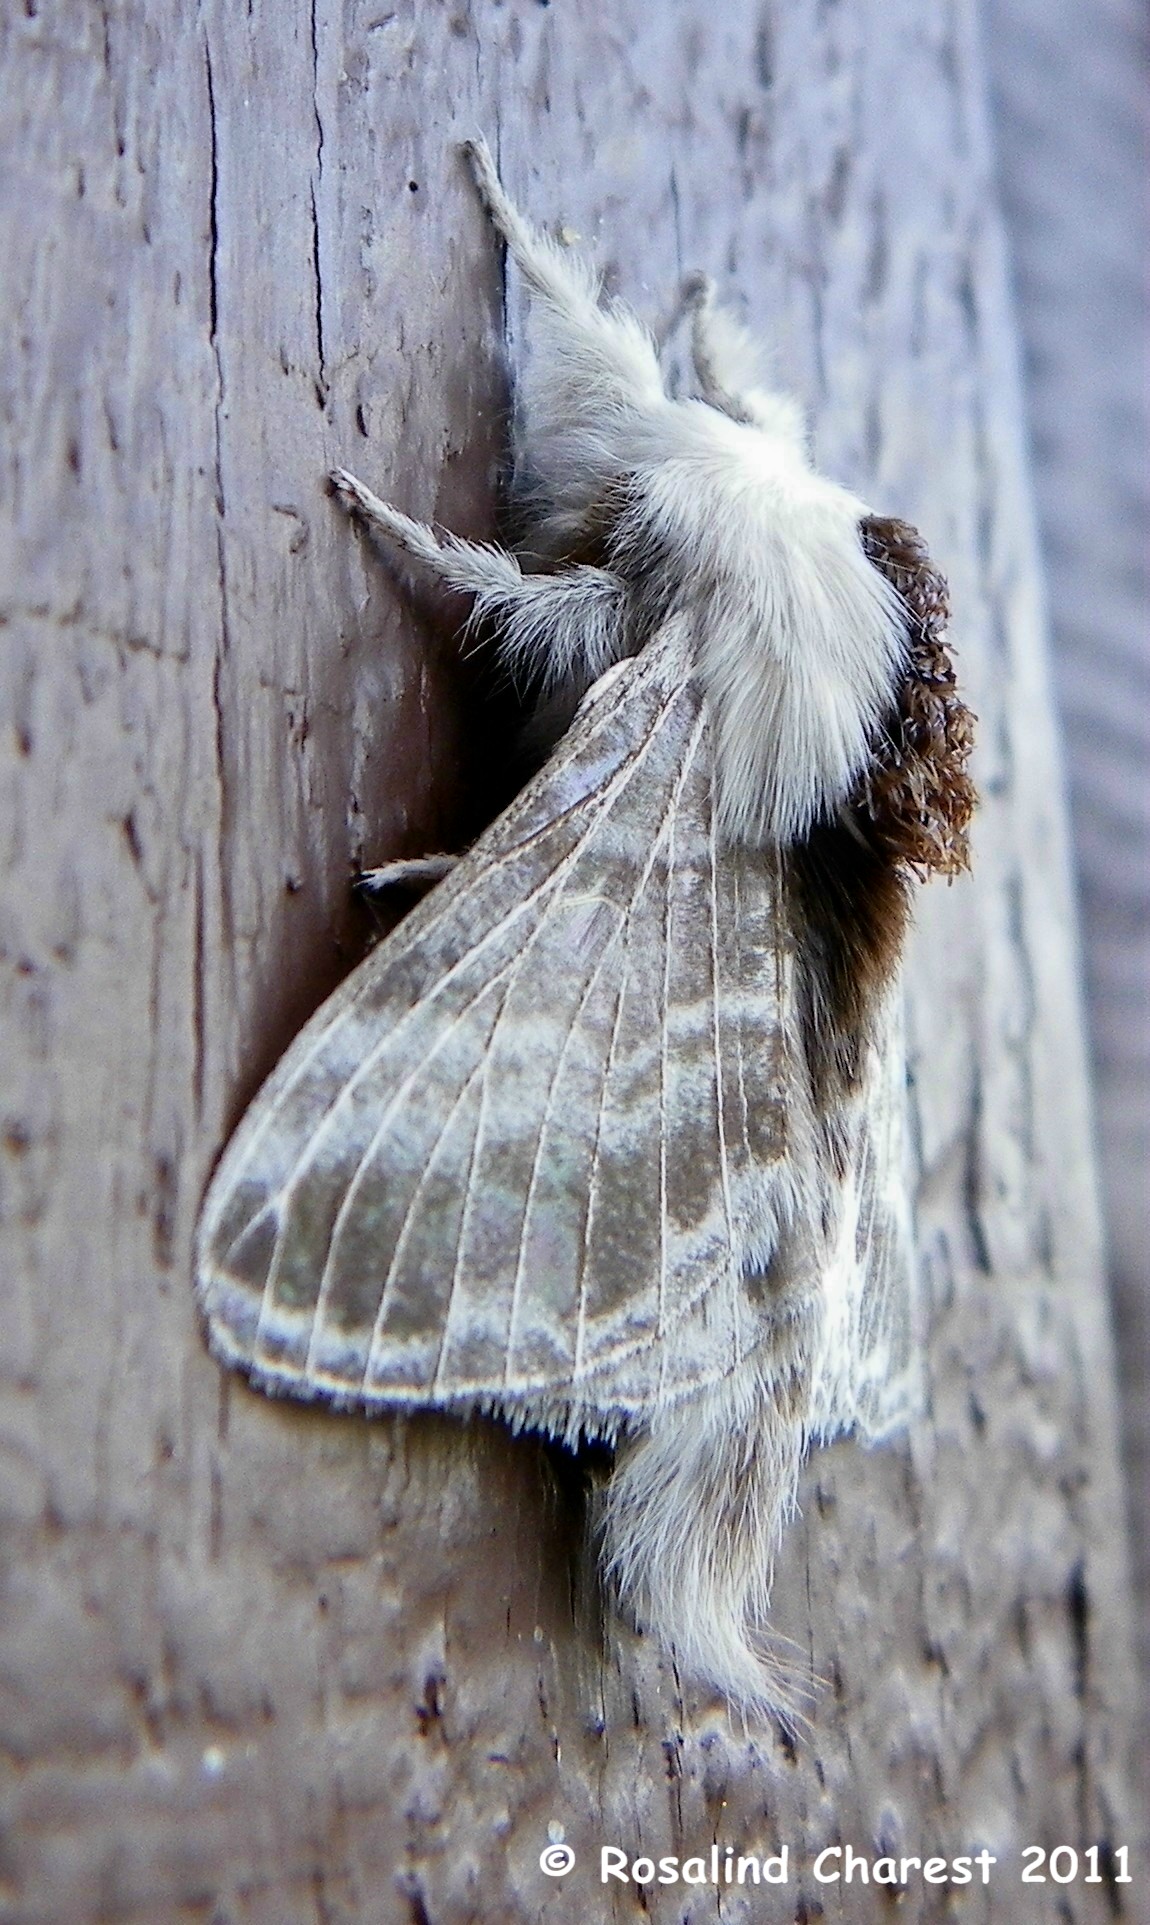 Giant Fluffy Moth